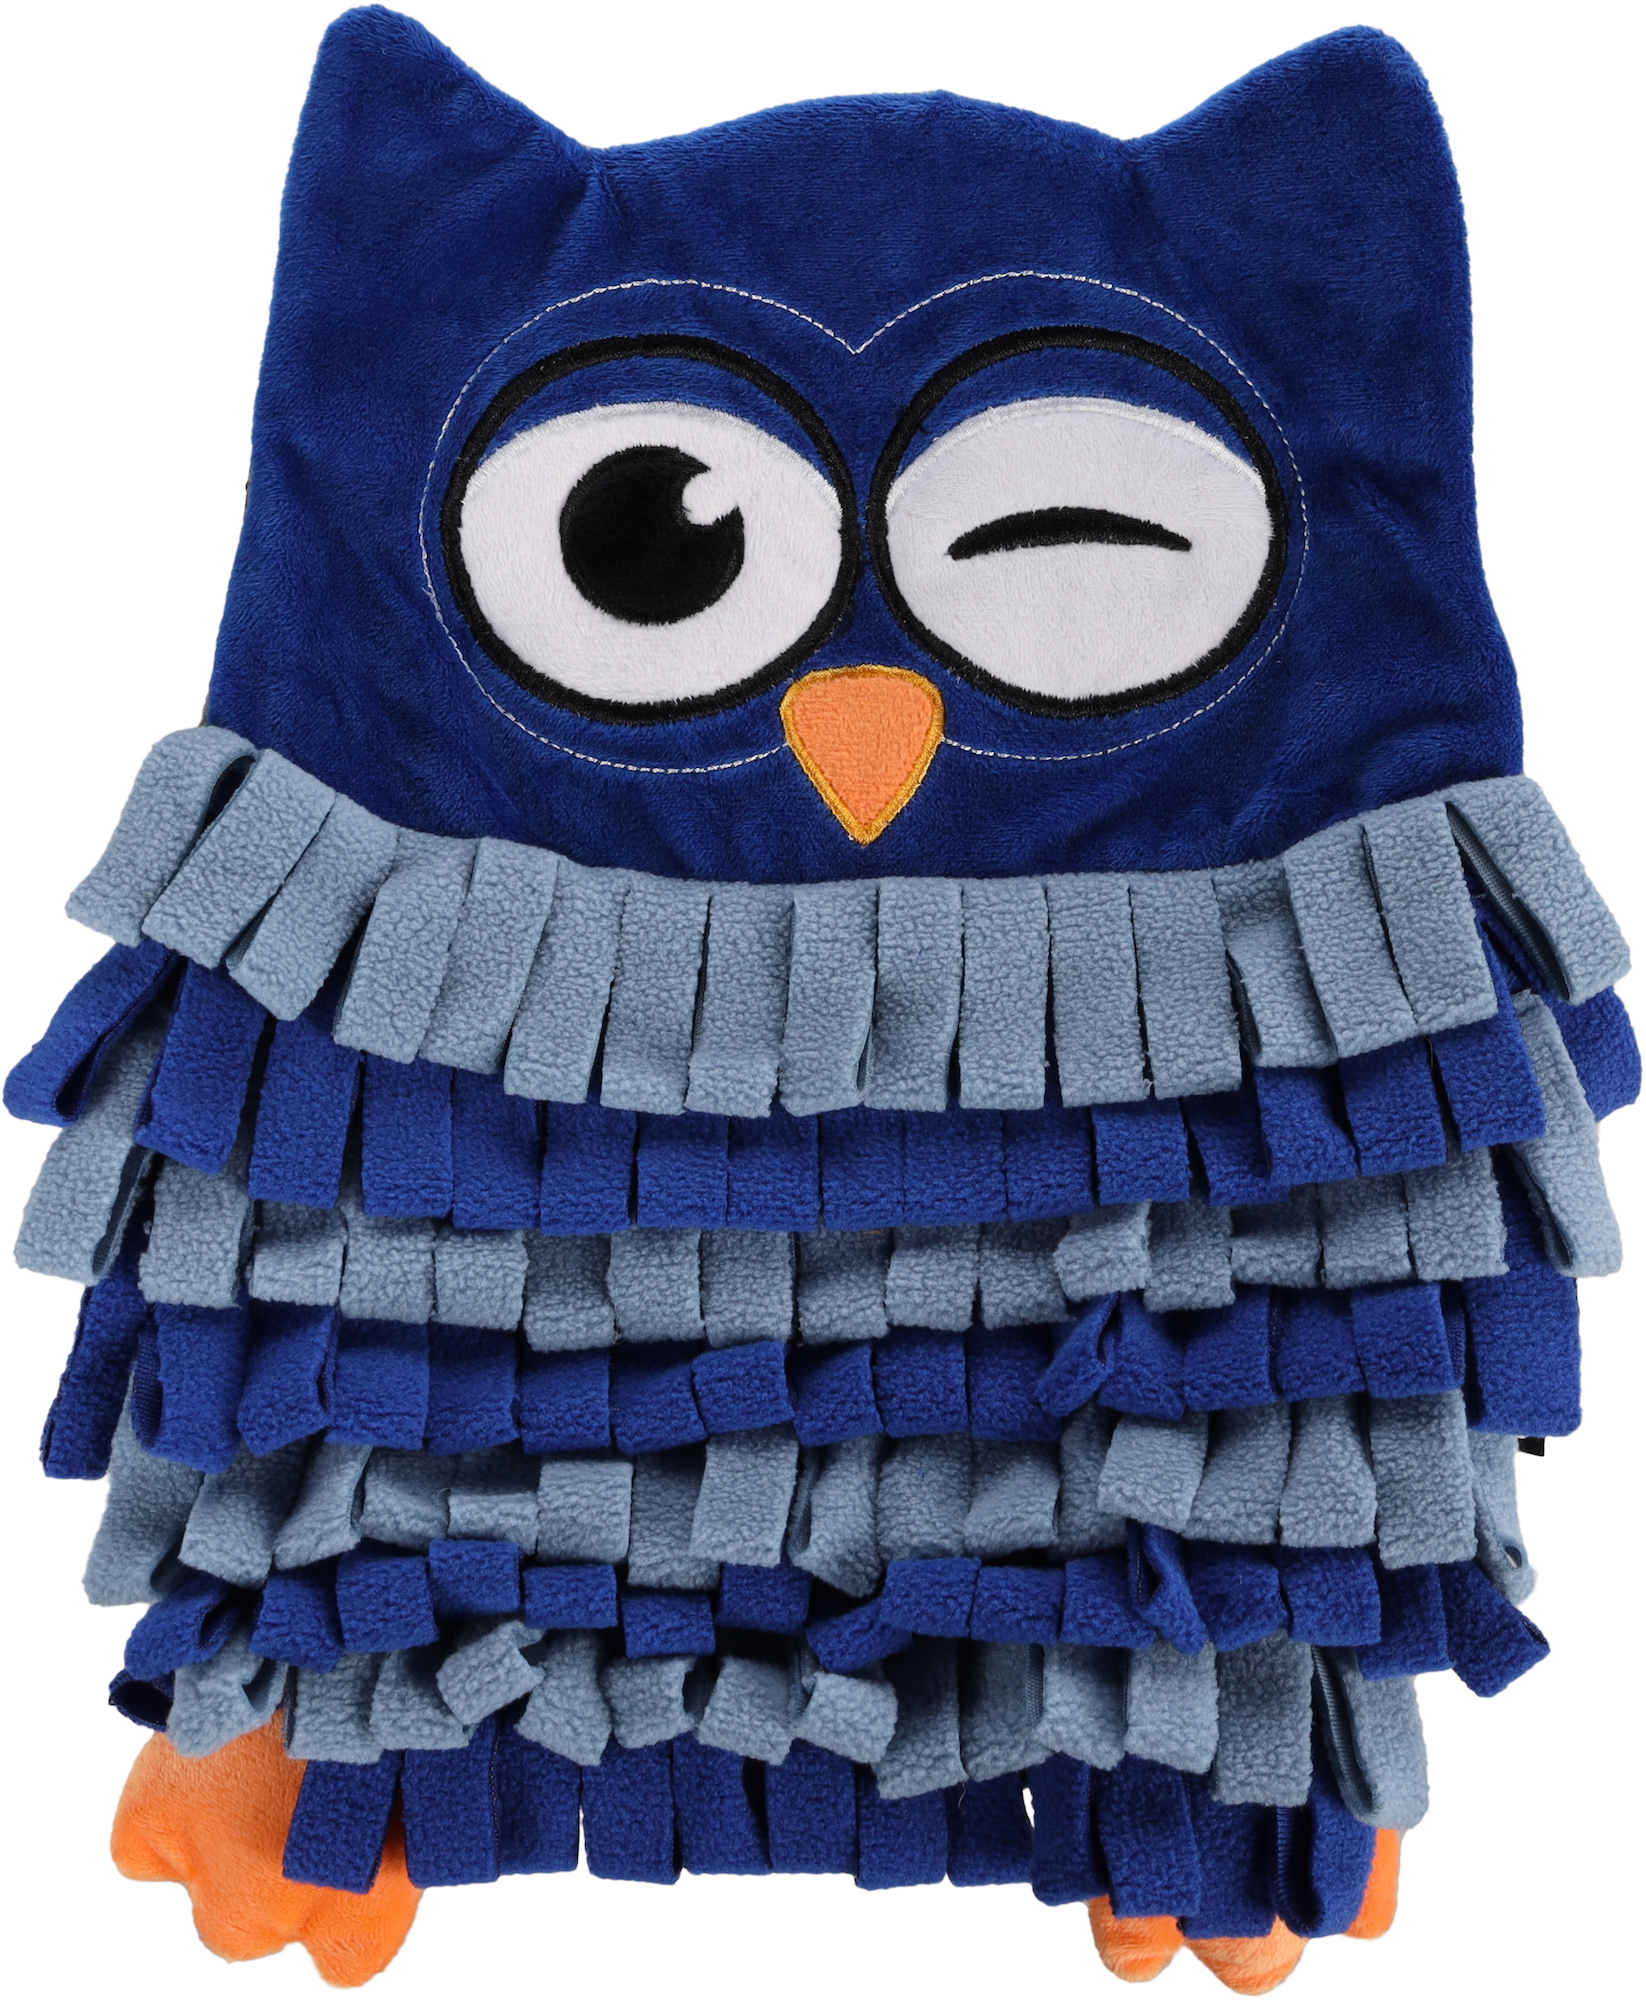 Sniffing carpet Plinkie Owl Blue | 522519 | Flamingo Pet Products